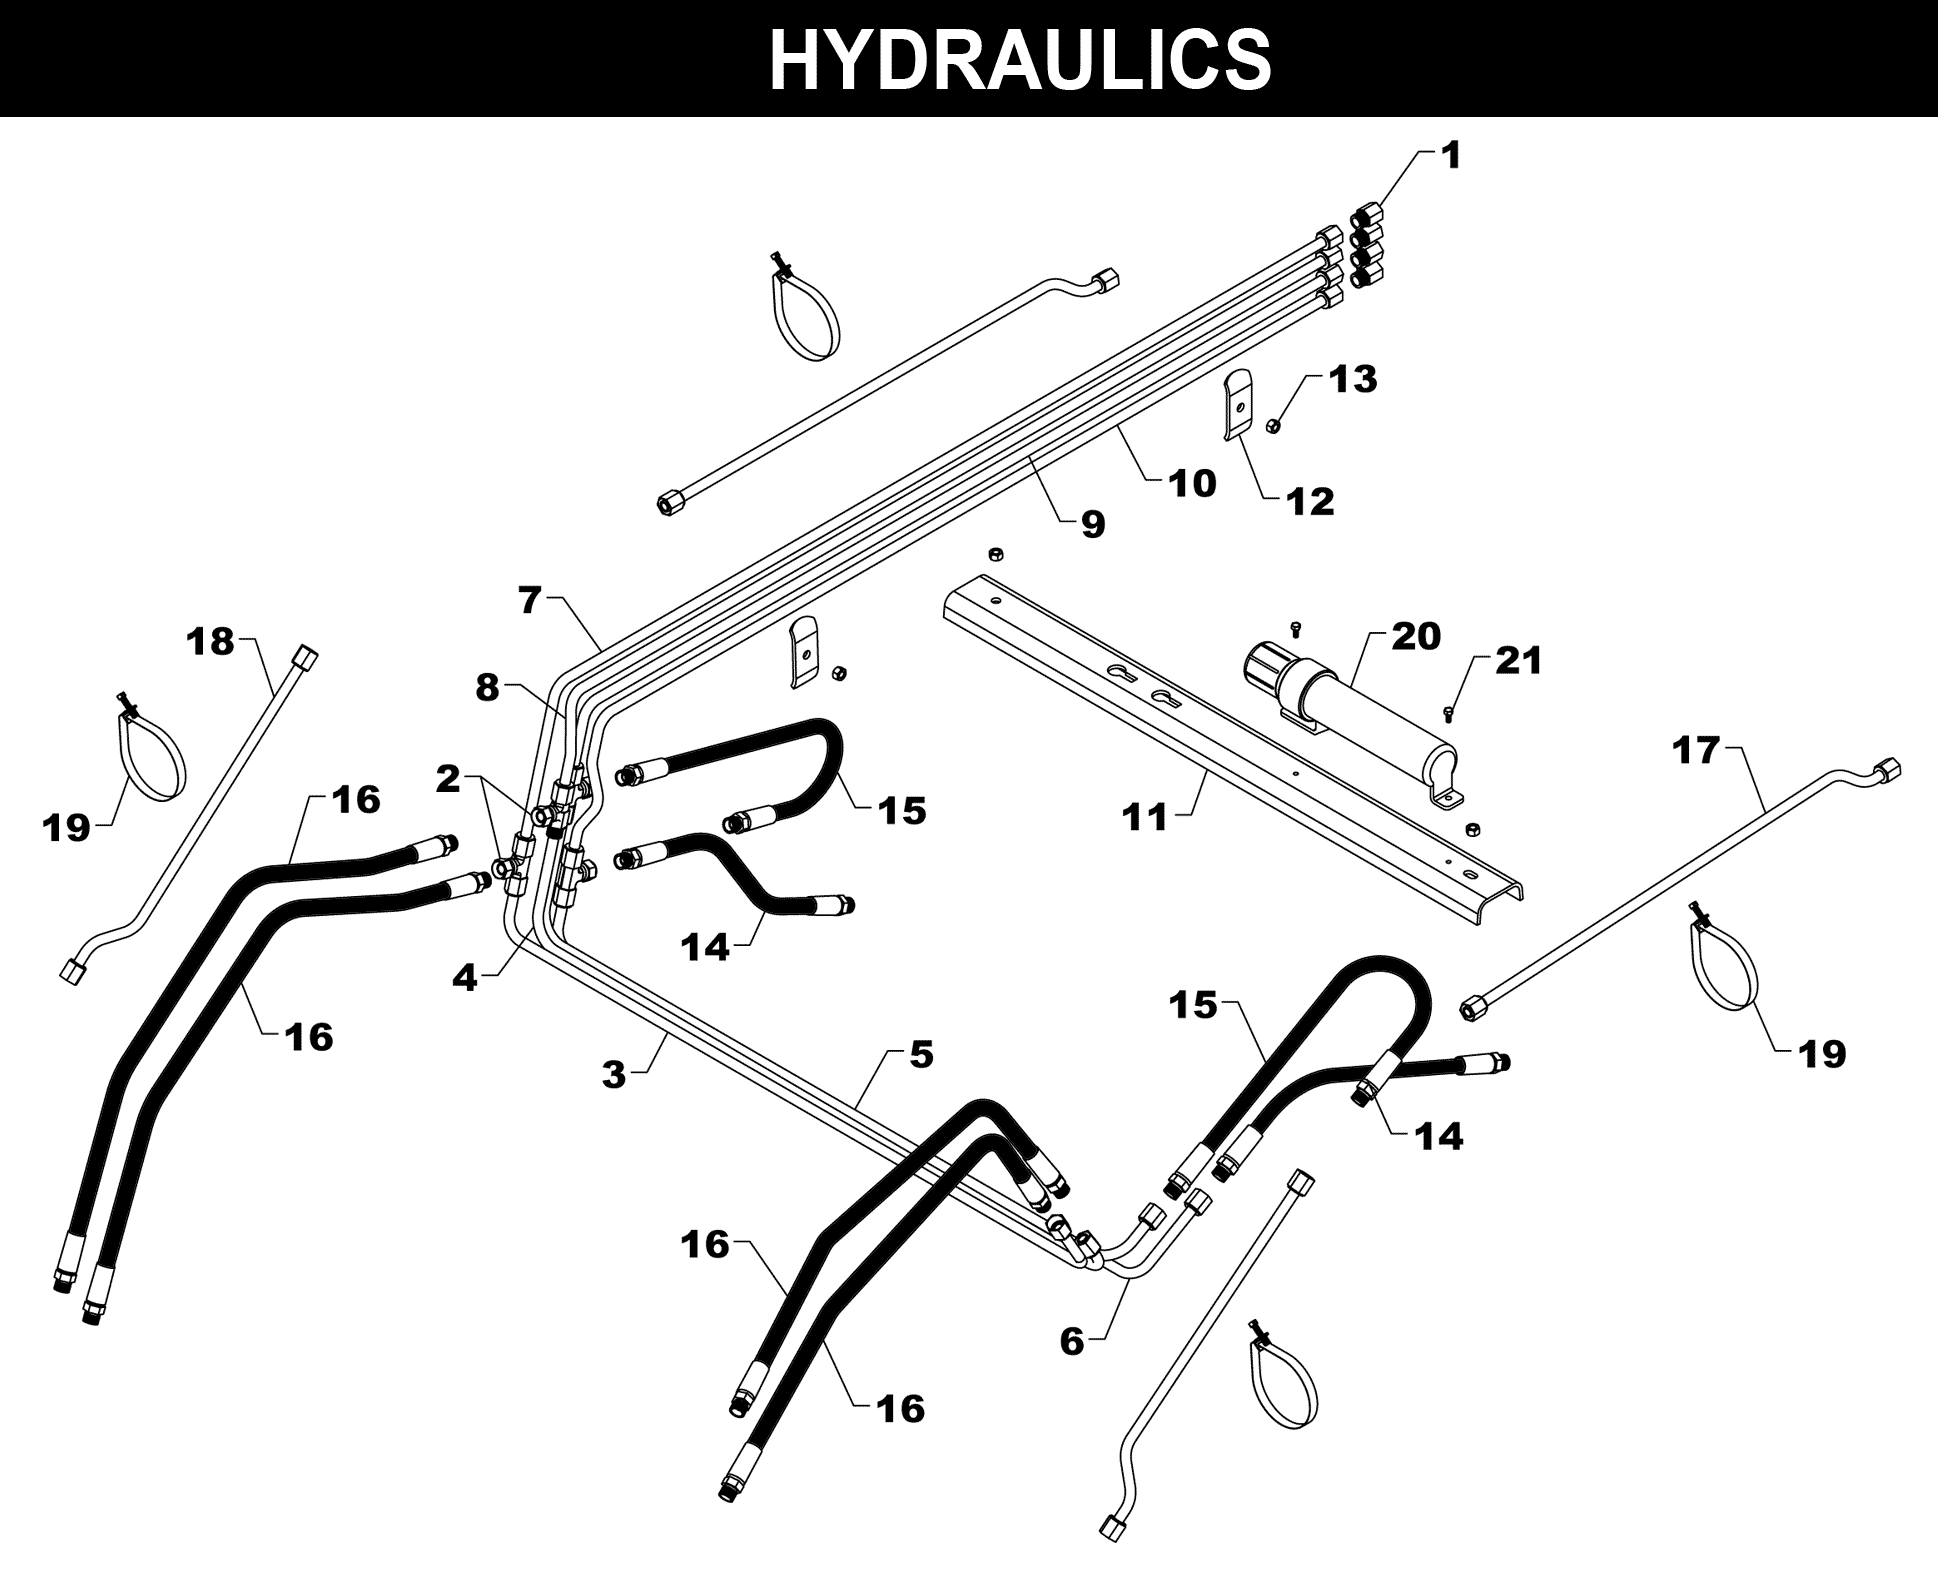 TA-48 HYDRAULICS